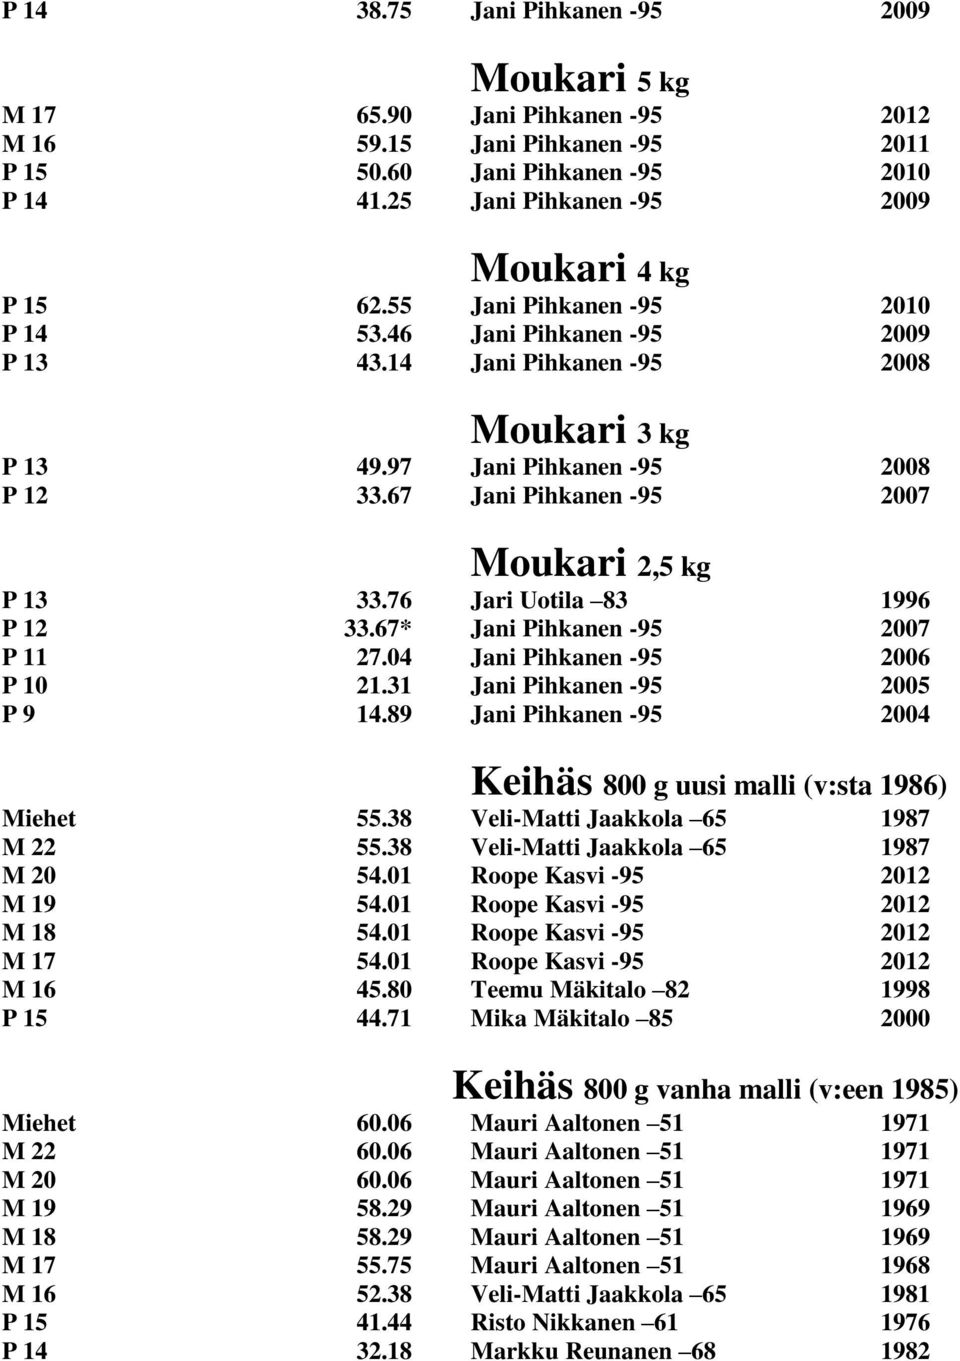 67 Jani Pihkanen -95 2007 Moukari 2,5 kg P 13 33.76 Jari Uotila 83 1996 P 12 33.67* Jani Pihkanen -95 2007 P 11 27.04 Jani Pihkanen -95 2006 P 10 21.31 Jani Pihkanen -95 2005 P 9 14.